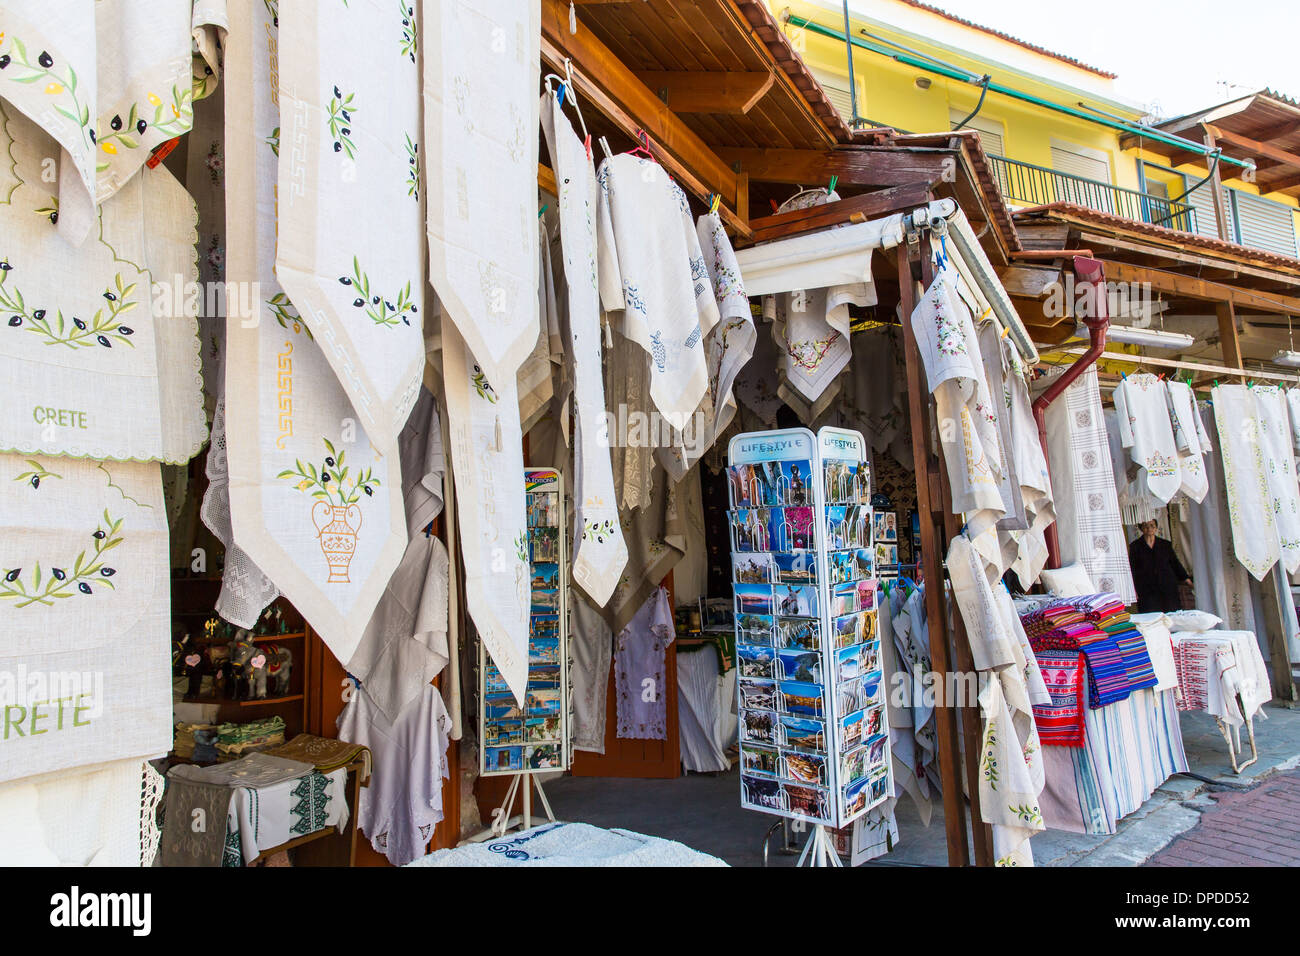 Les textiles traditionnels sur un tissu coloré, fait main, de souvenirs en Grèce, crite Banque D'Images